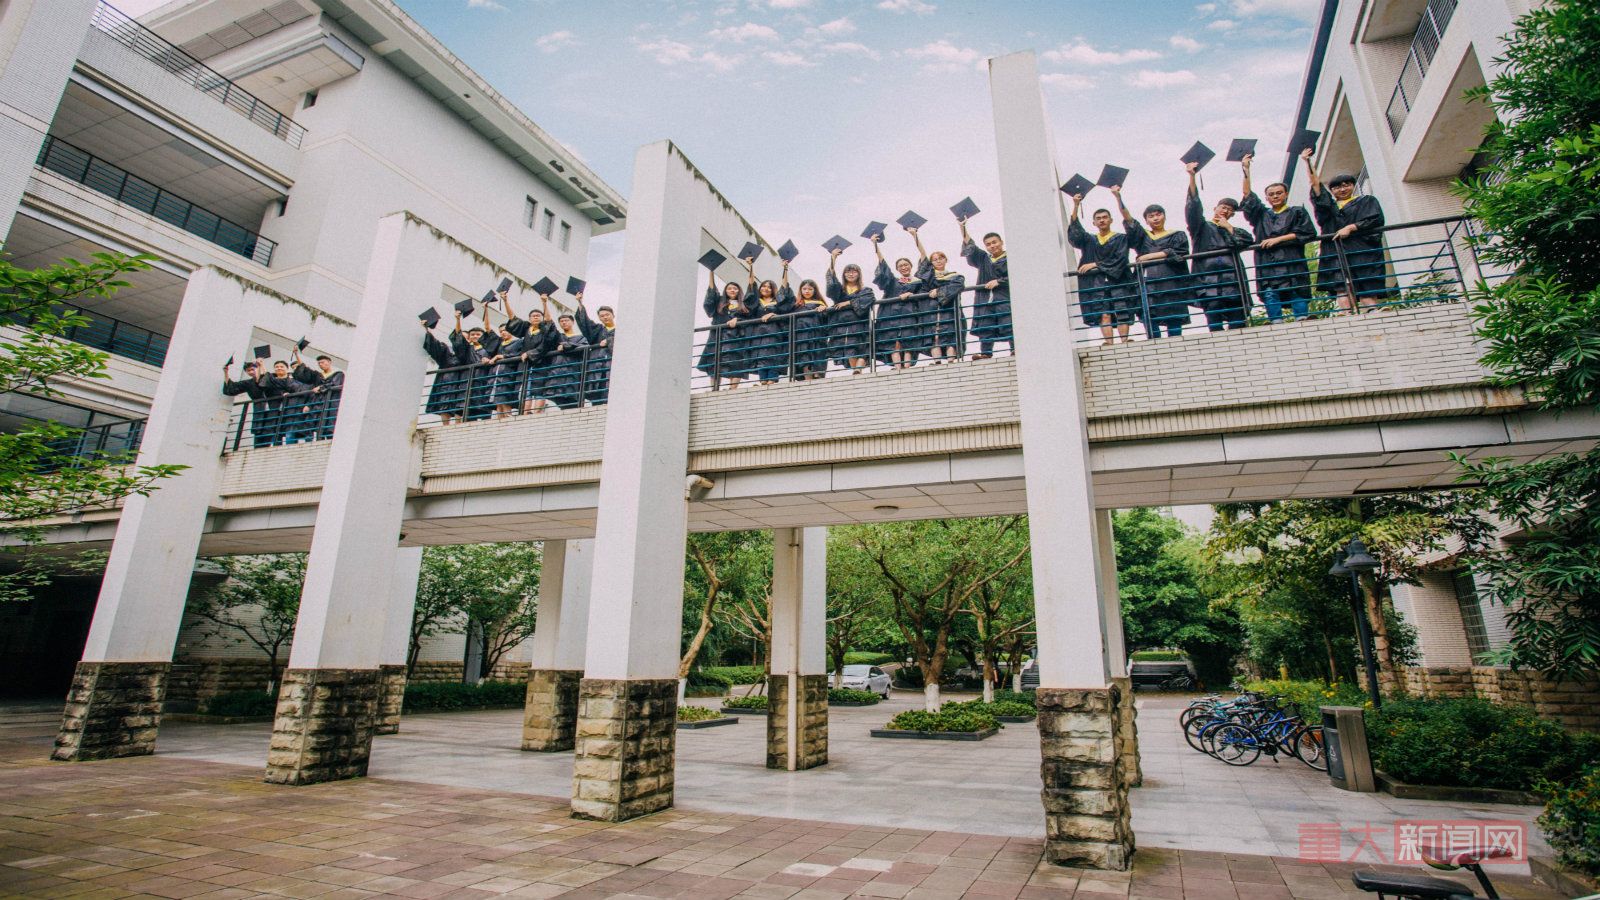 重庆大学毕业季创意照片